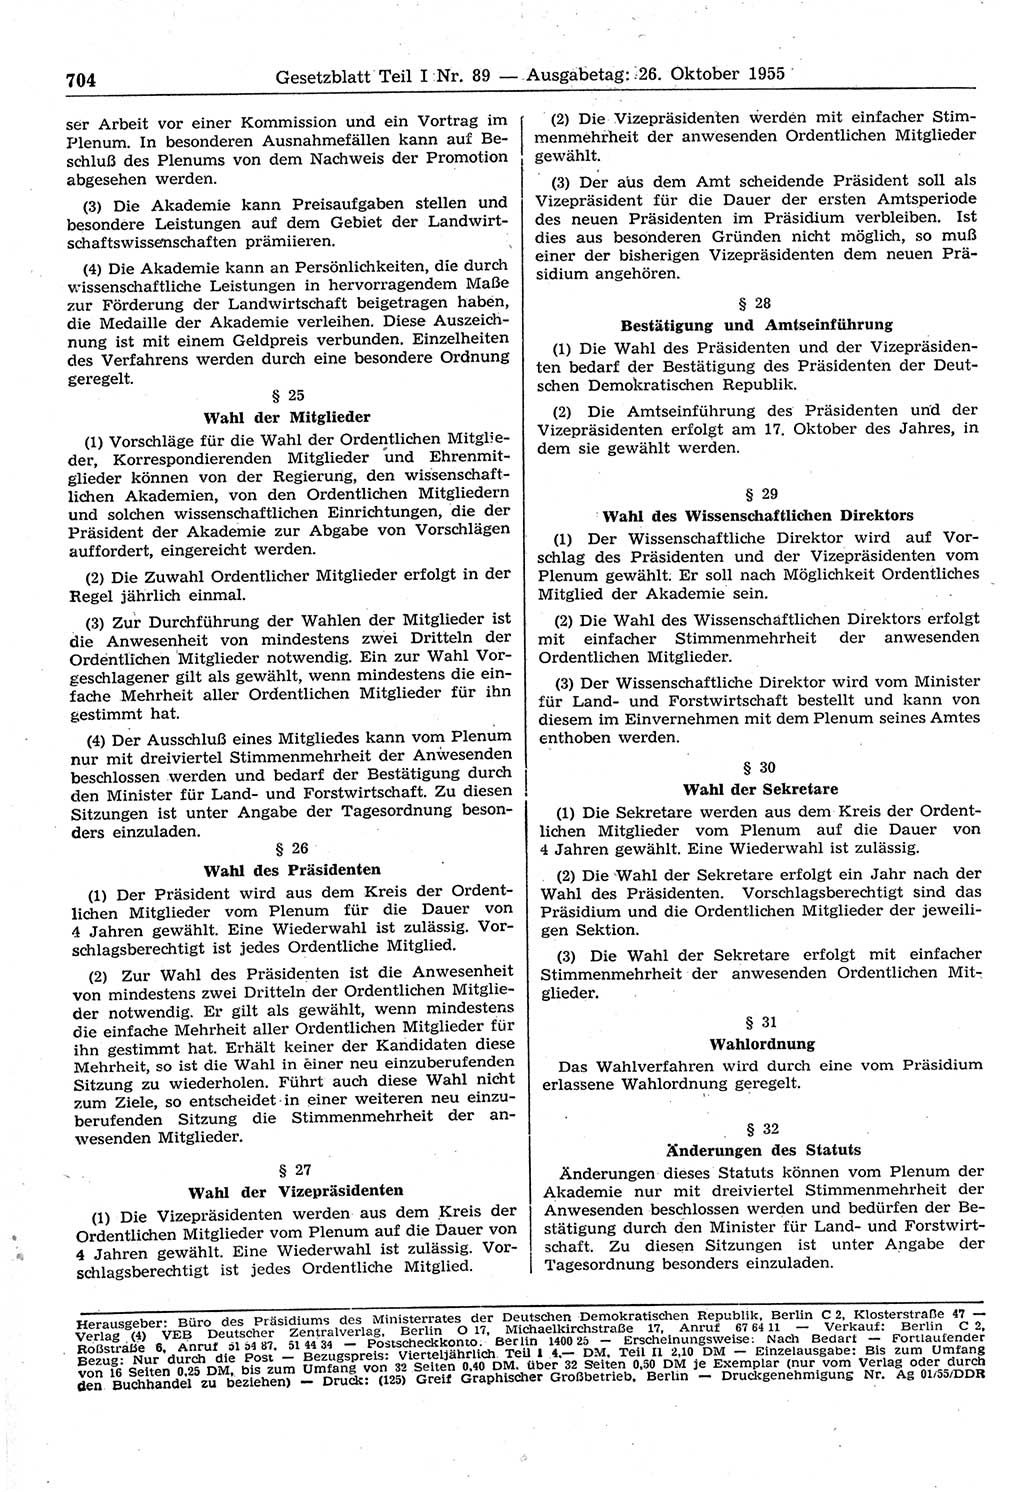 Gesetzblatt (GBl.) der Deutschen Demokratischen Republik (DDR) Teil Ⅰ 1955, Seite 704 (GBl. DDR Ⅰ 1955, S. 704)